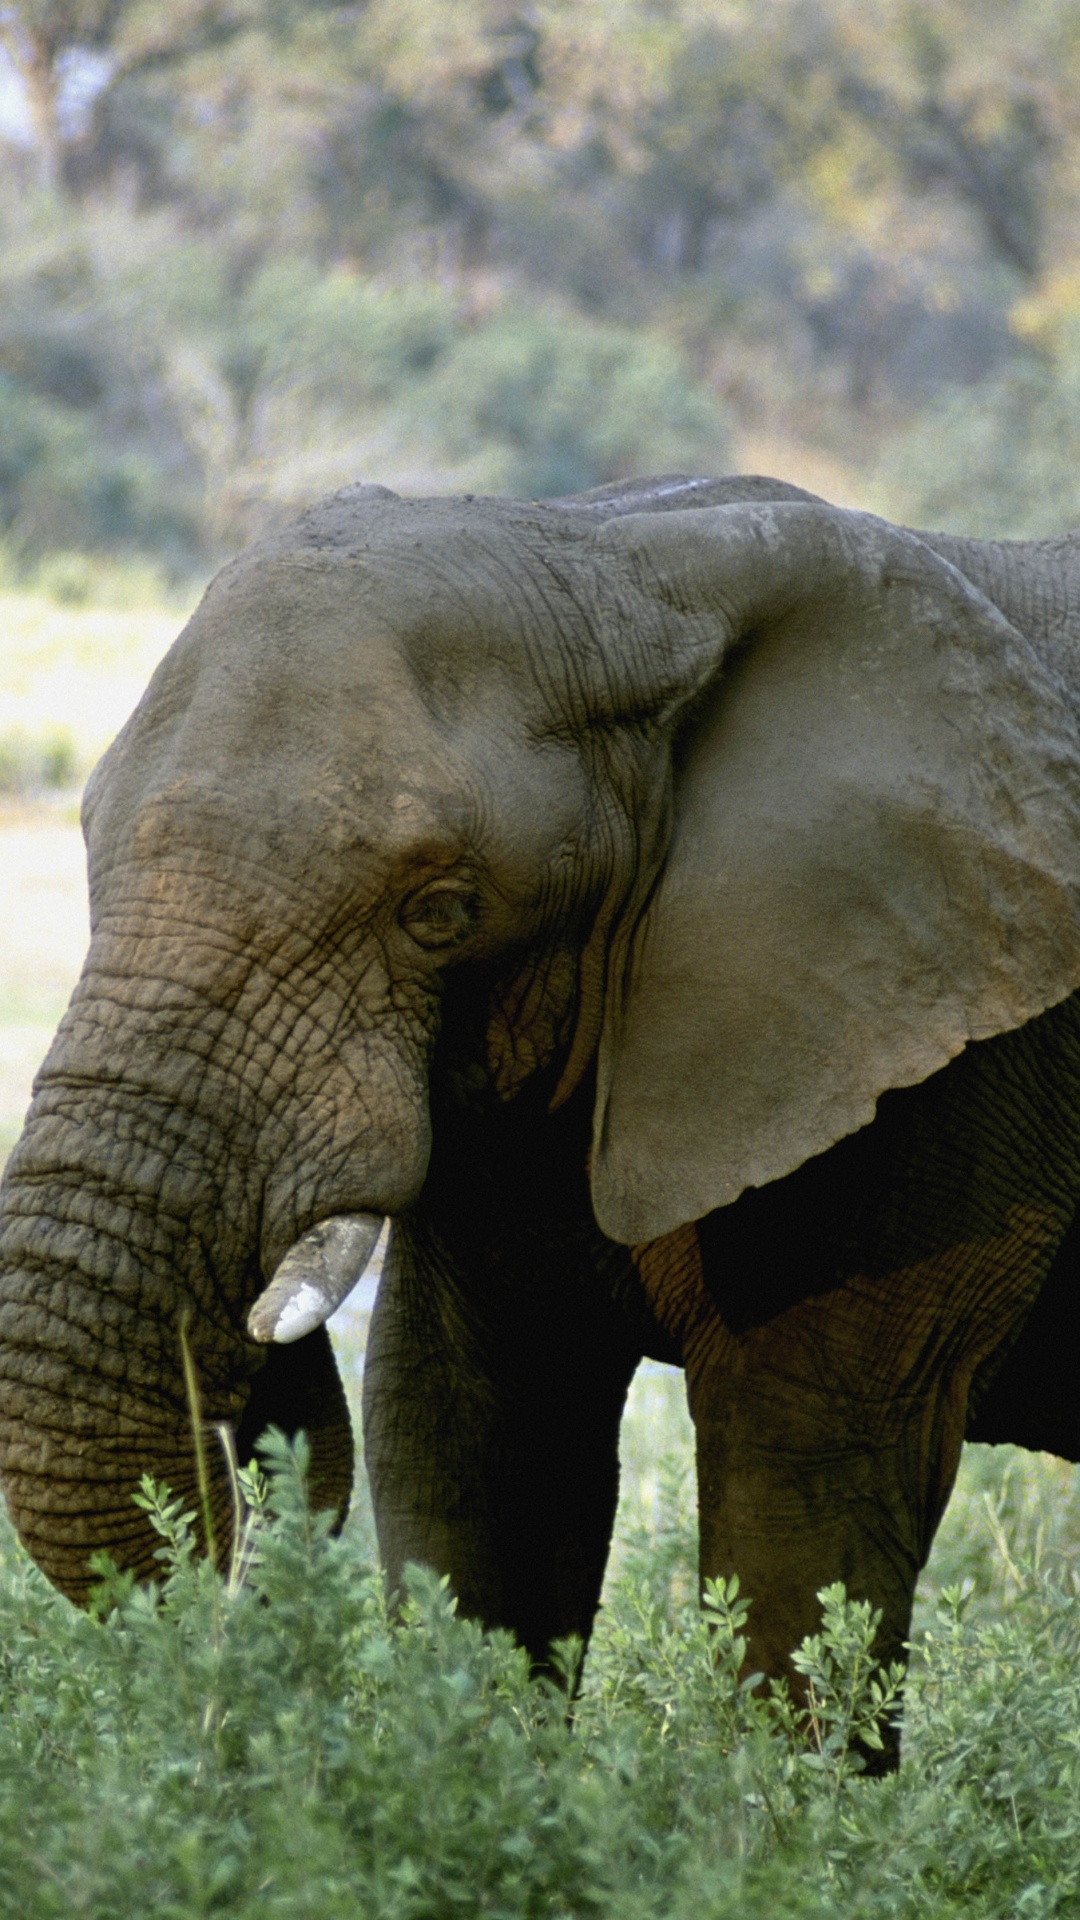 獠牙, 陆地动物, 野生动物, 大象和猛犸象, 印度大象 壁纸 1080x1920 允许